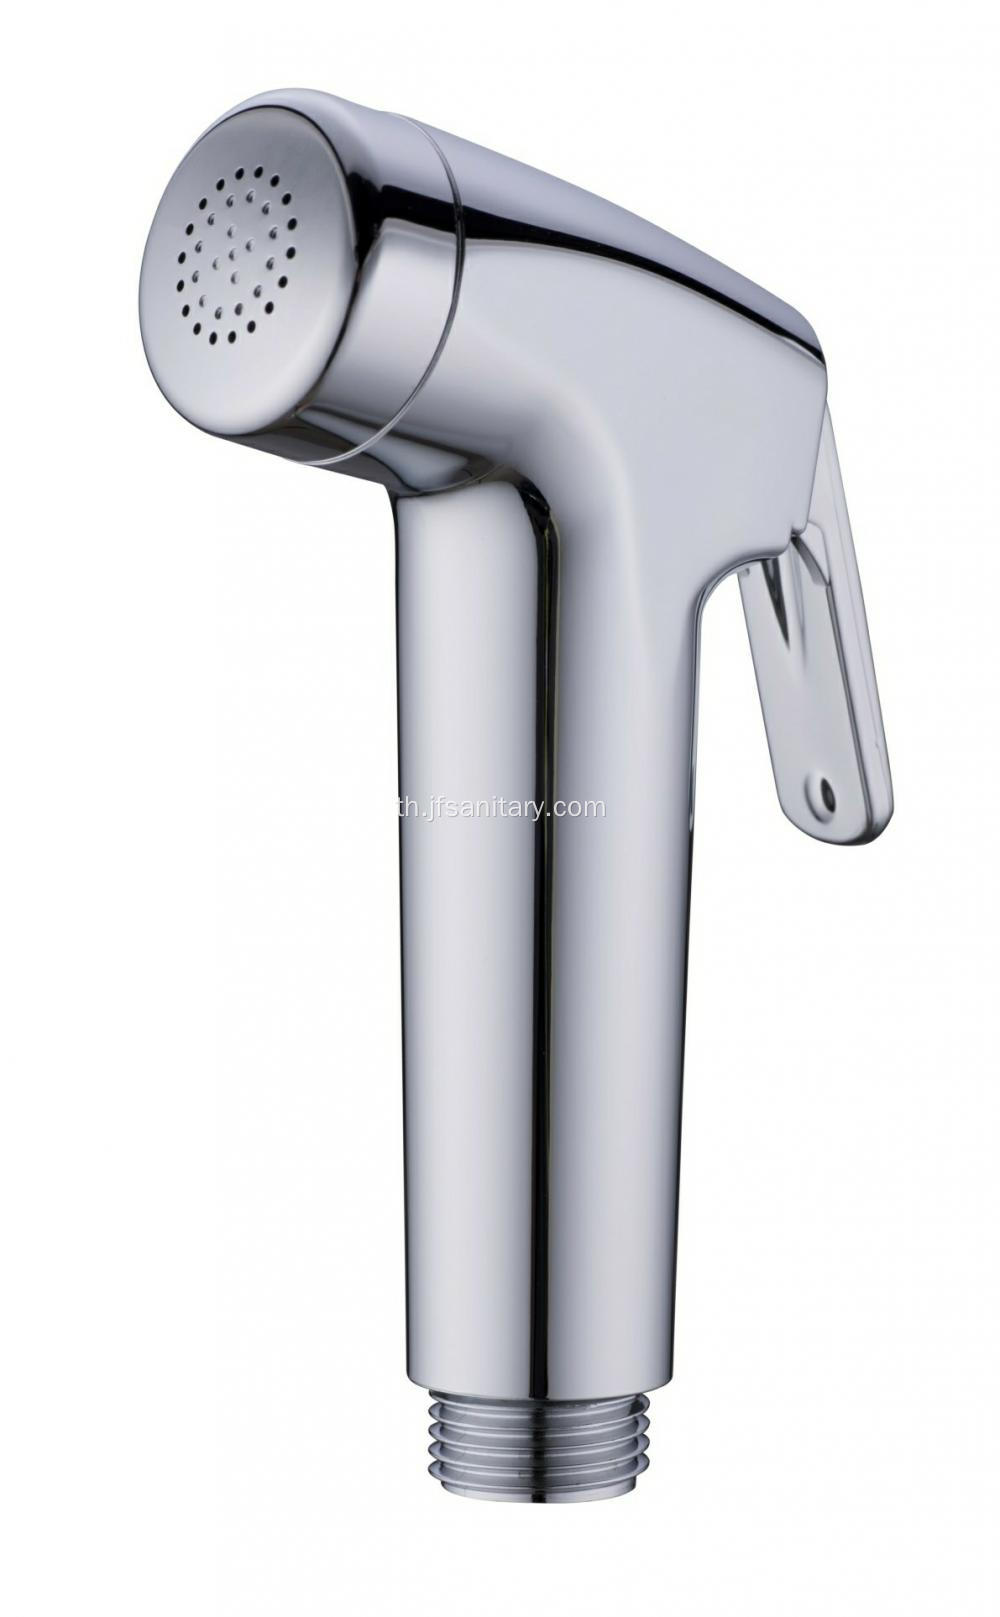 ฝักบัวอาบน้ำโทรศัพท์โถสุขภัณฑ์ ABS พลาสติก Chrome สำหรับห้องน้ำ